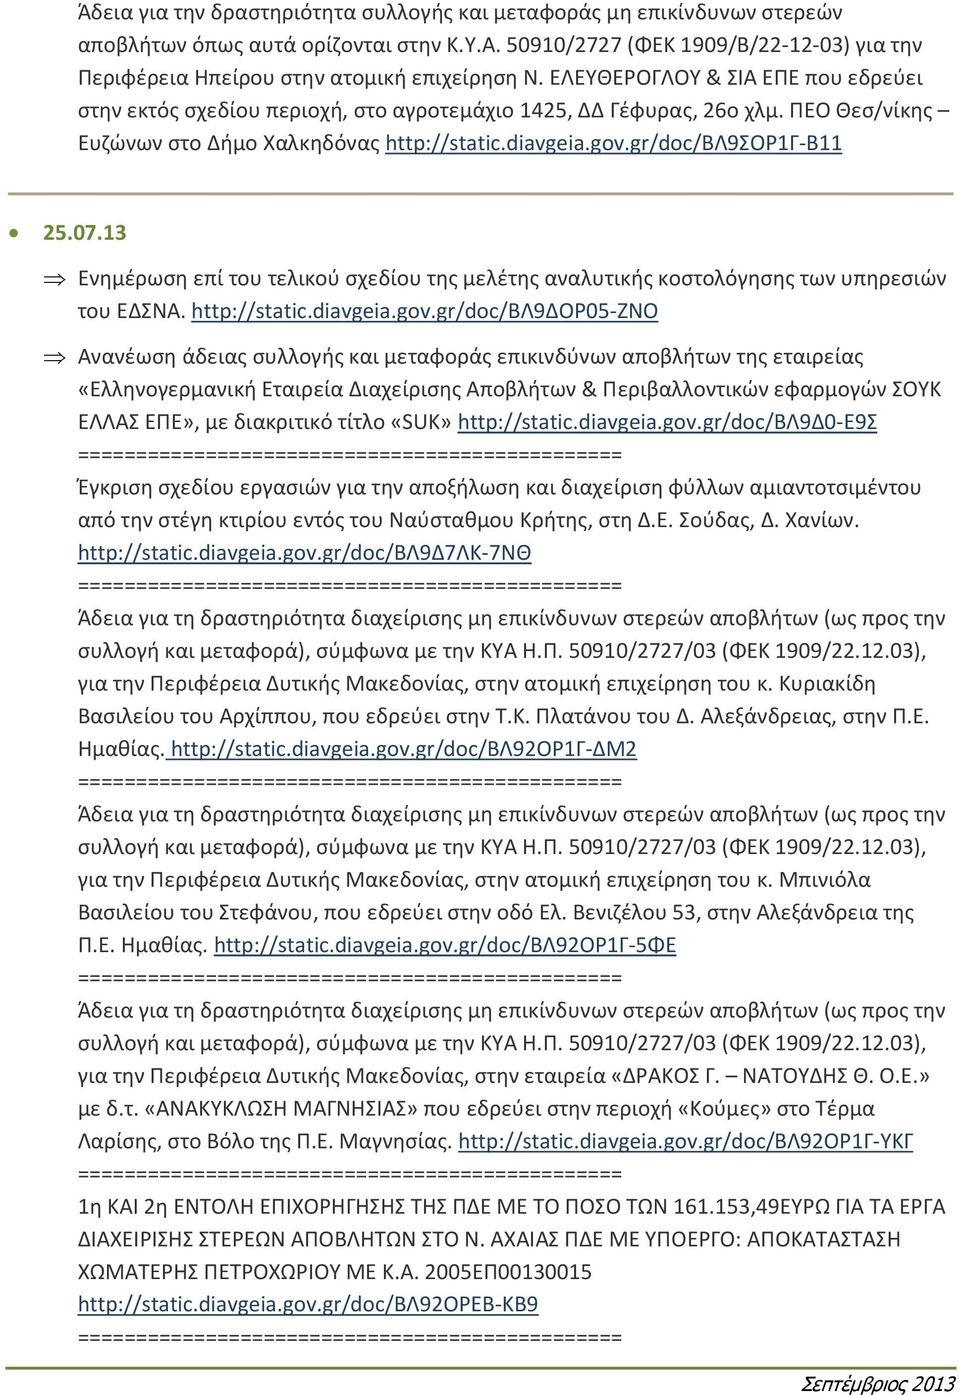 ΠΕΟ Θεσ/νίκης Ευζώνων στο Δήμο Χαλκηδόνας http://static.diavgeia.gov.gr/doc/βλ9σορ1γ-β11 25.07.13 Ενημέρωση επί του τελικού σχεδίου της μελέτης αναλυτικής κοστολόγησης των υπηρεσιών του ΕΔΣΝΑ.